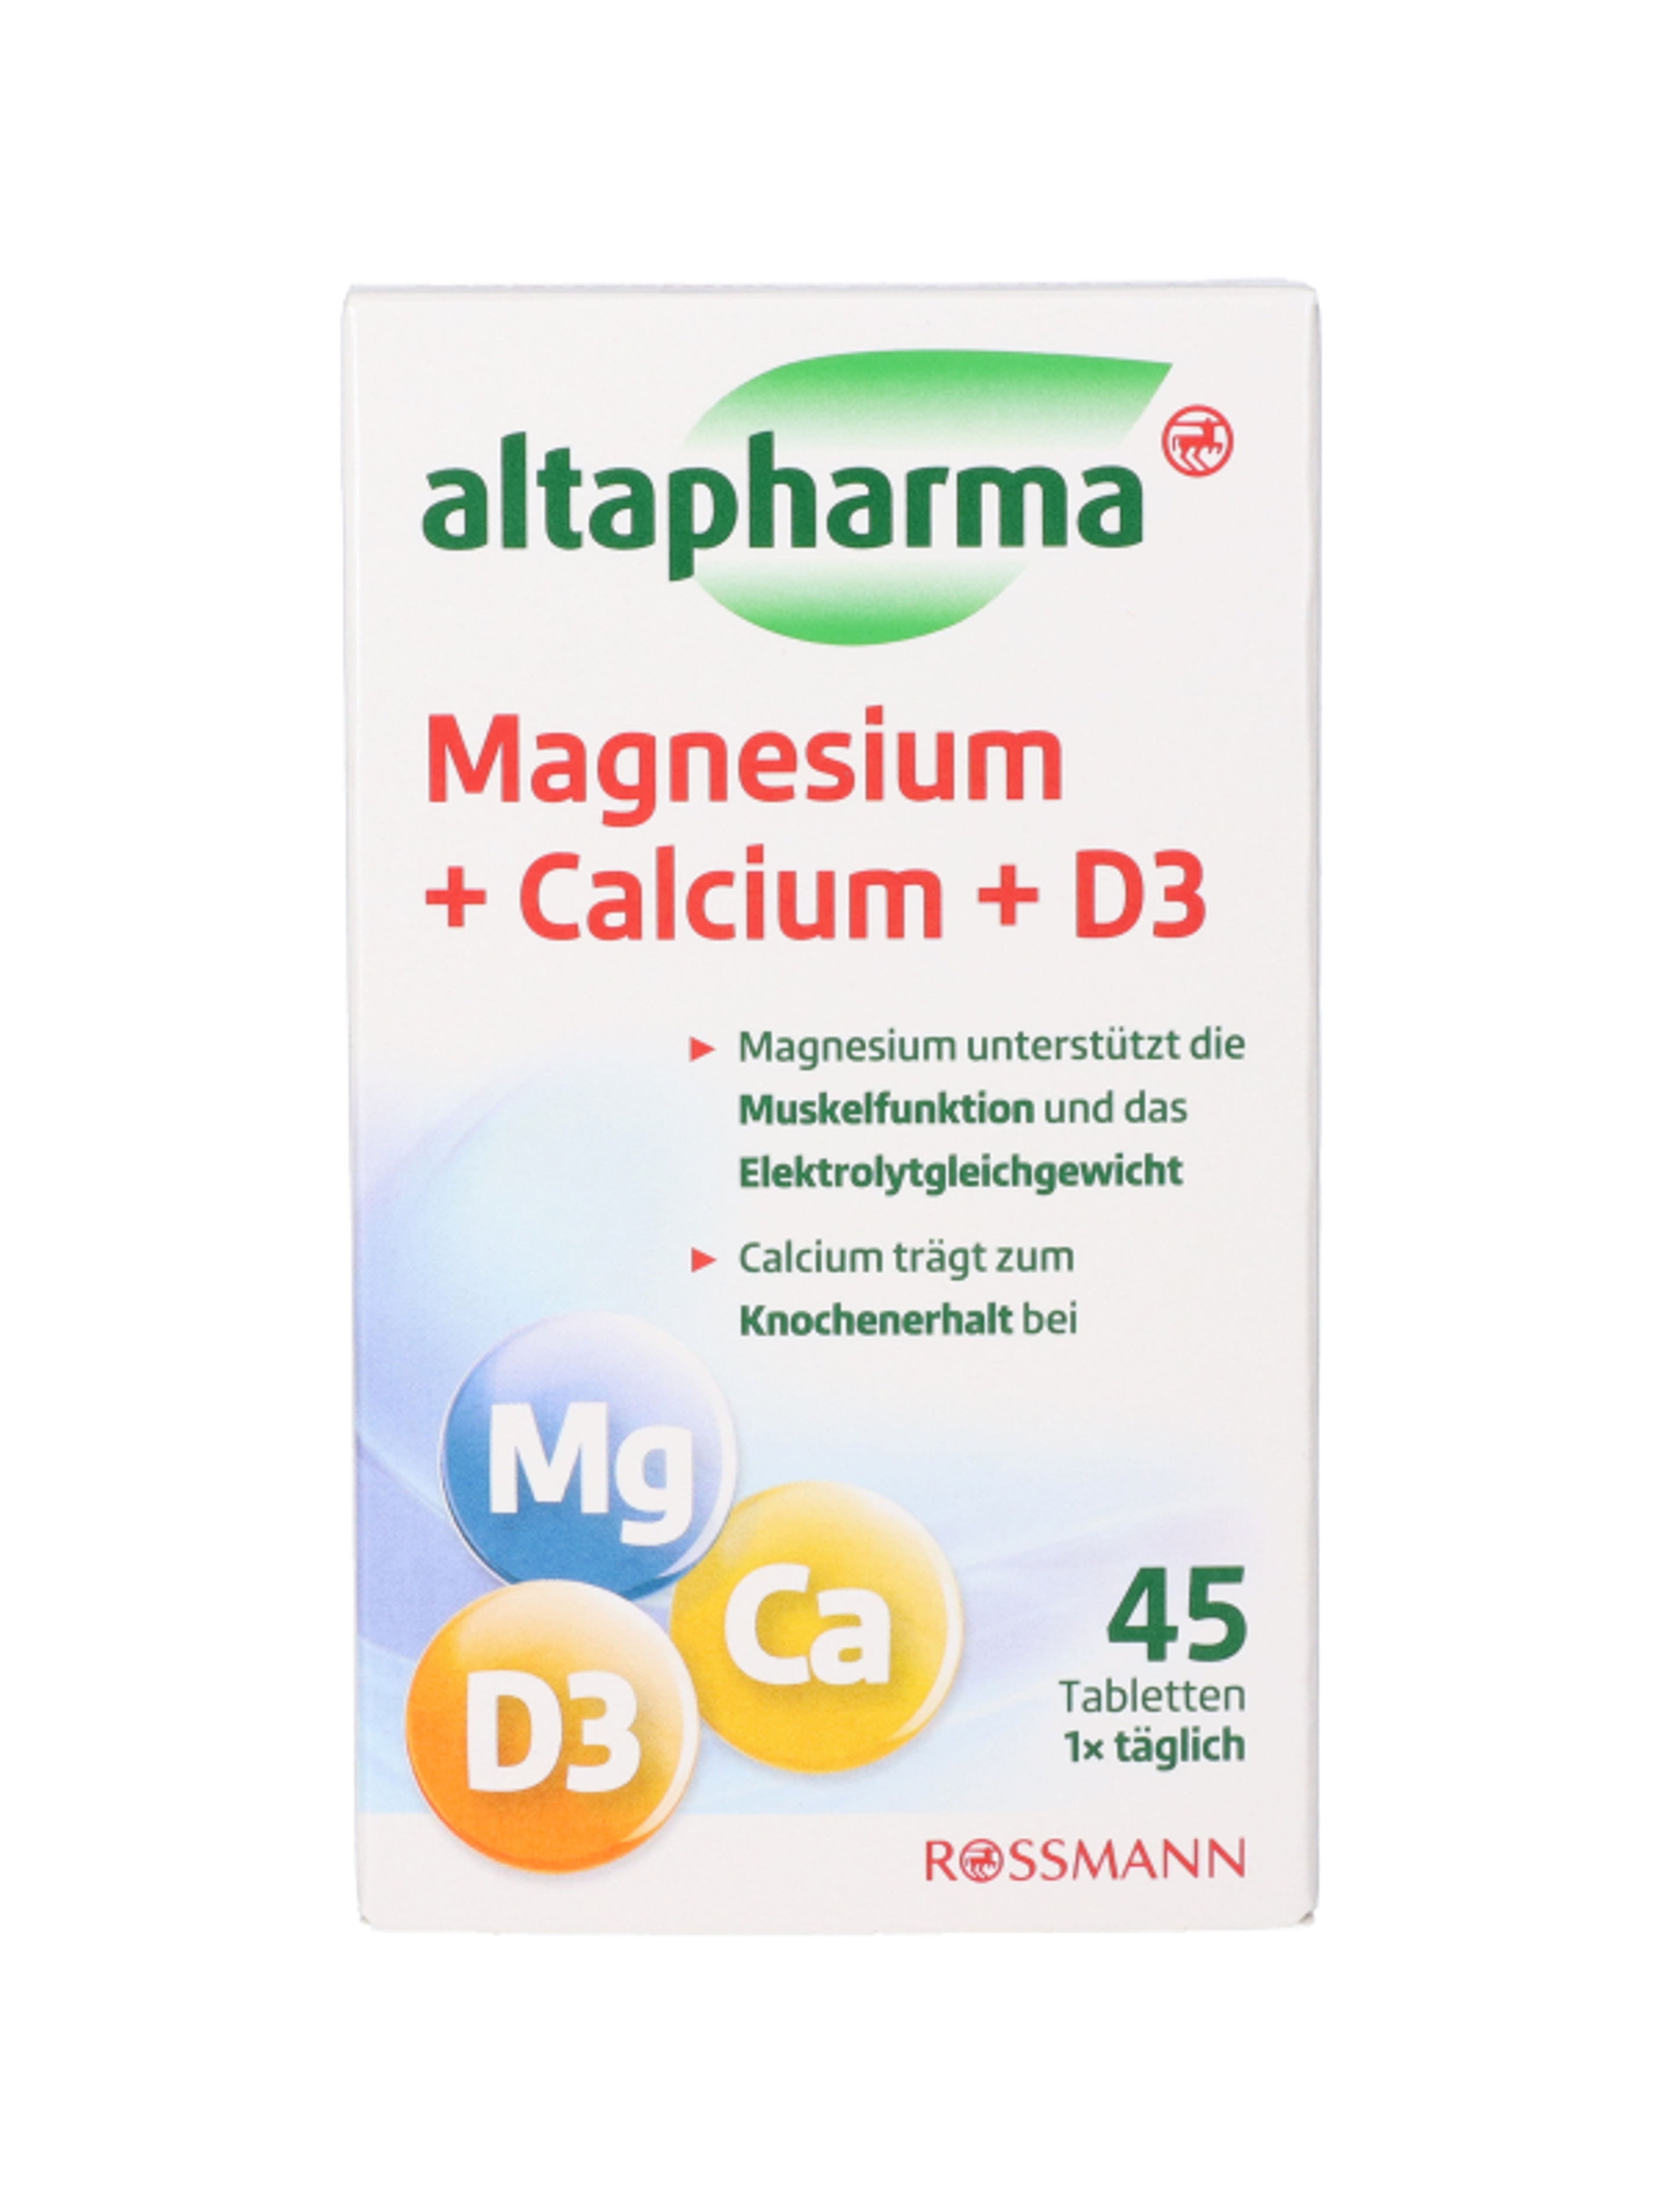 Altapharma magnézium, kalcium és D3-vitamin tabletta - 45 db